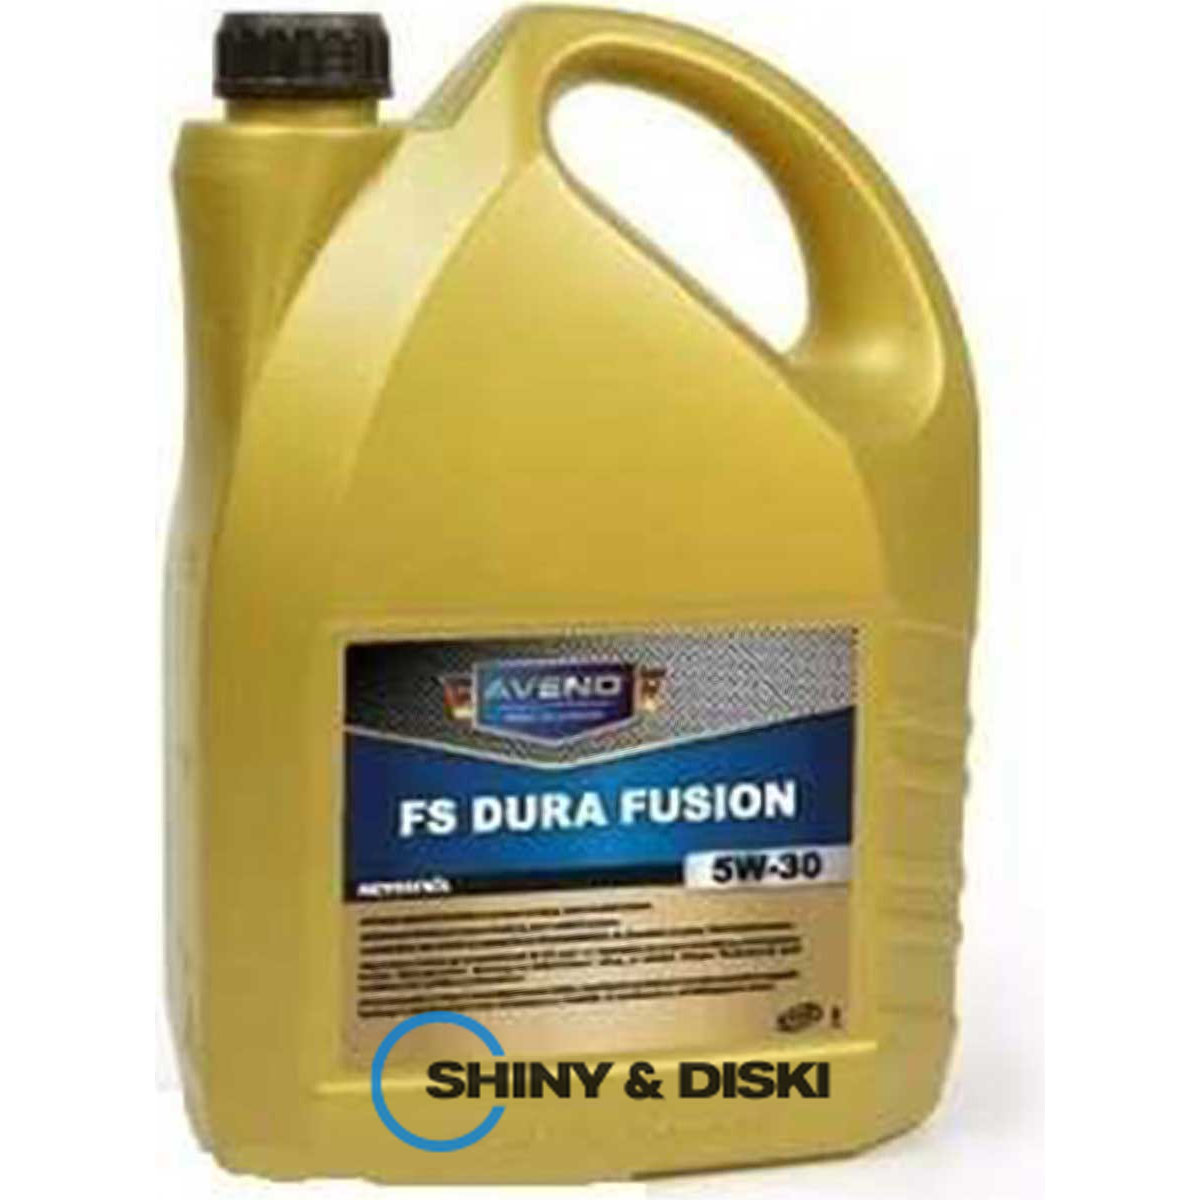 aveno fs dura fusion 5w-30 (5л)